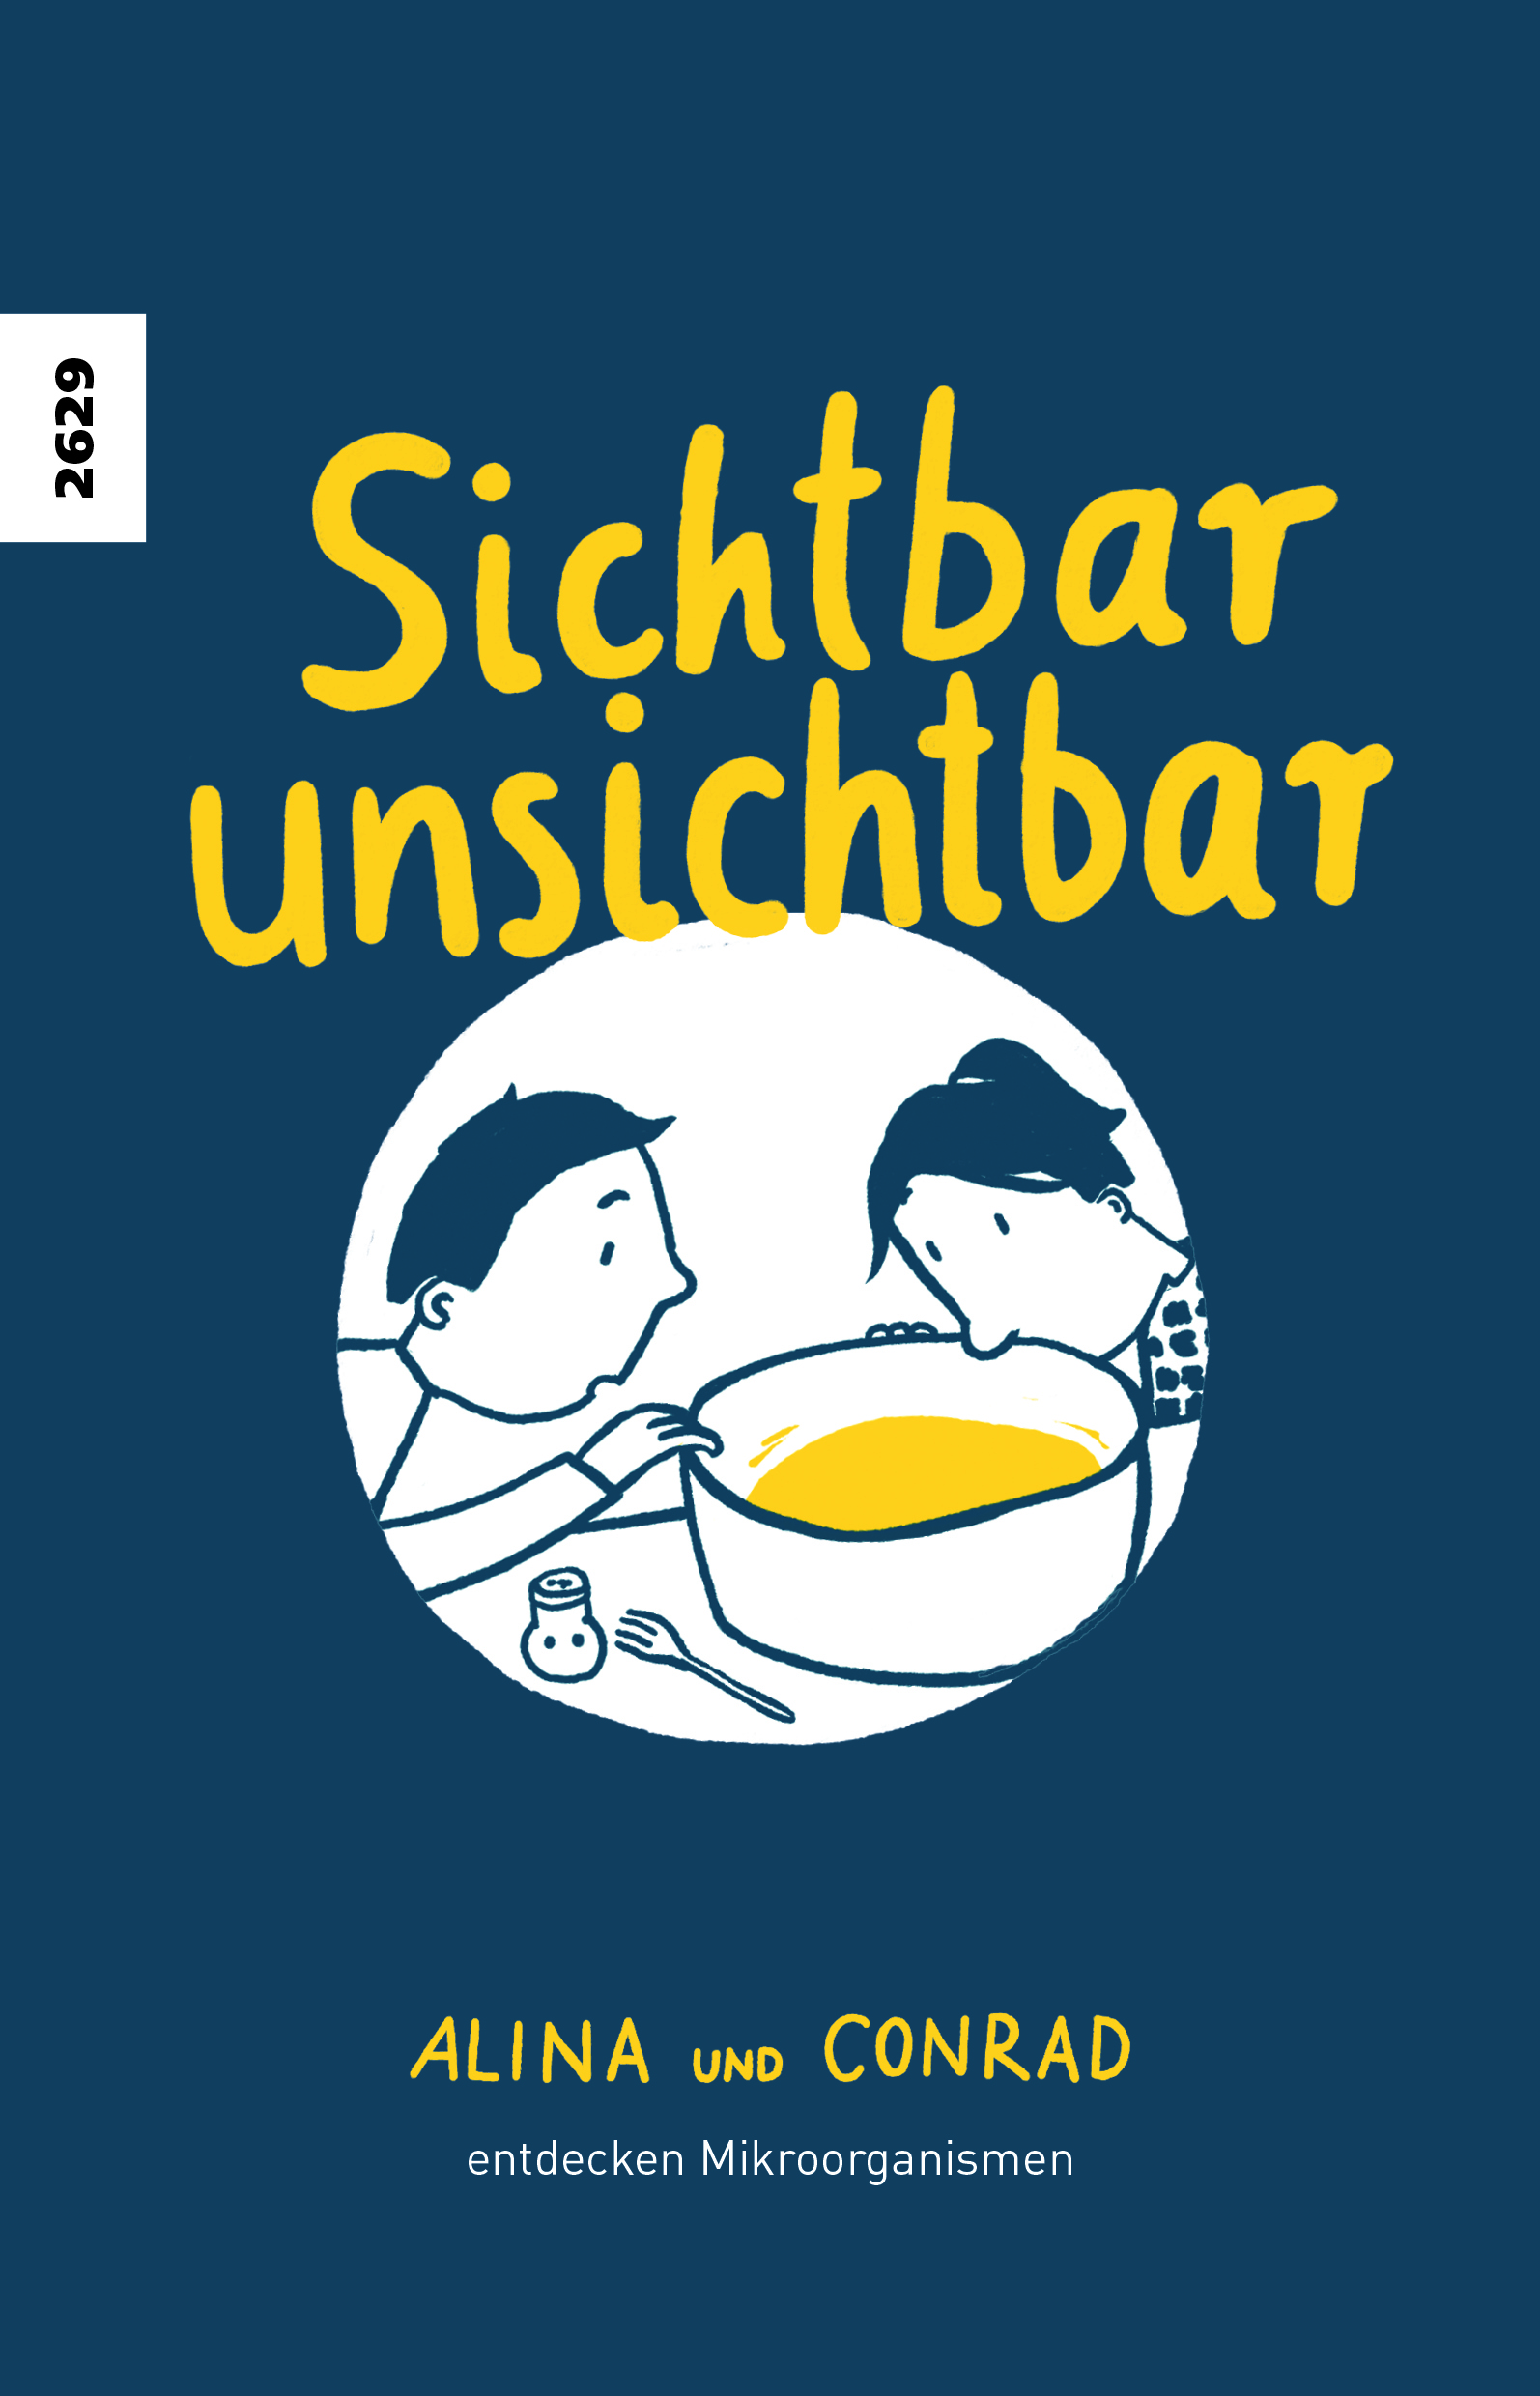 Sichtbar unsichtbar, ein Buch von Karin Kovar u.a., Illustration von Julia Duerr, SJW Verlag, Comic, Mikroorganismen